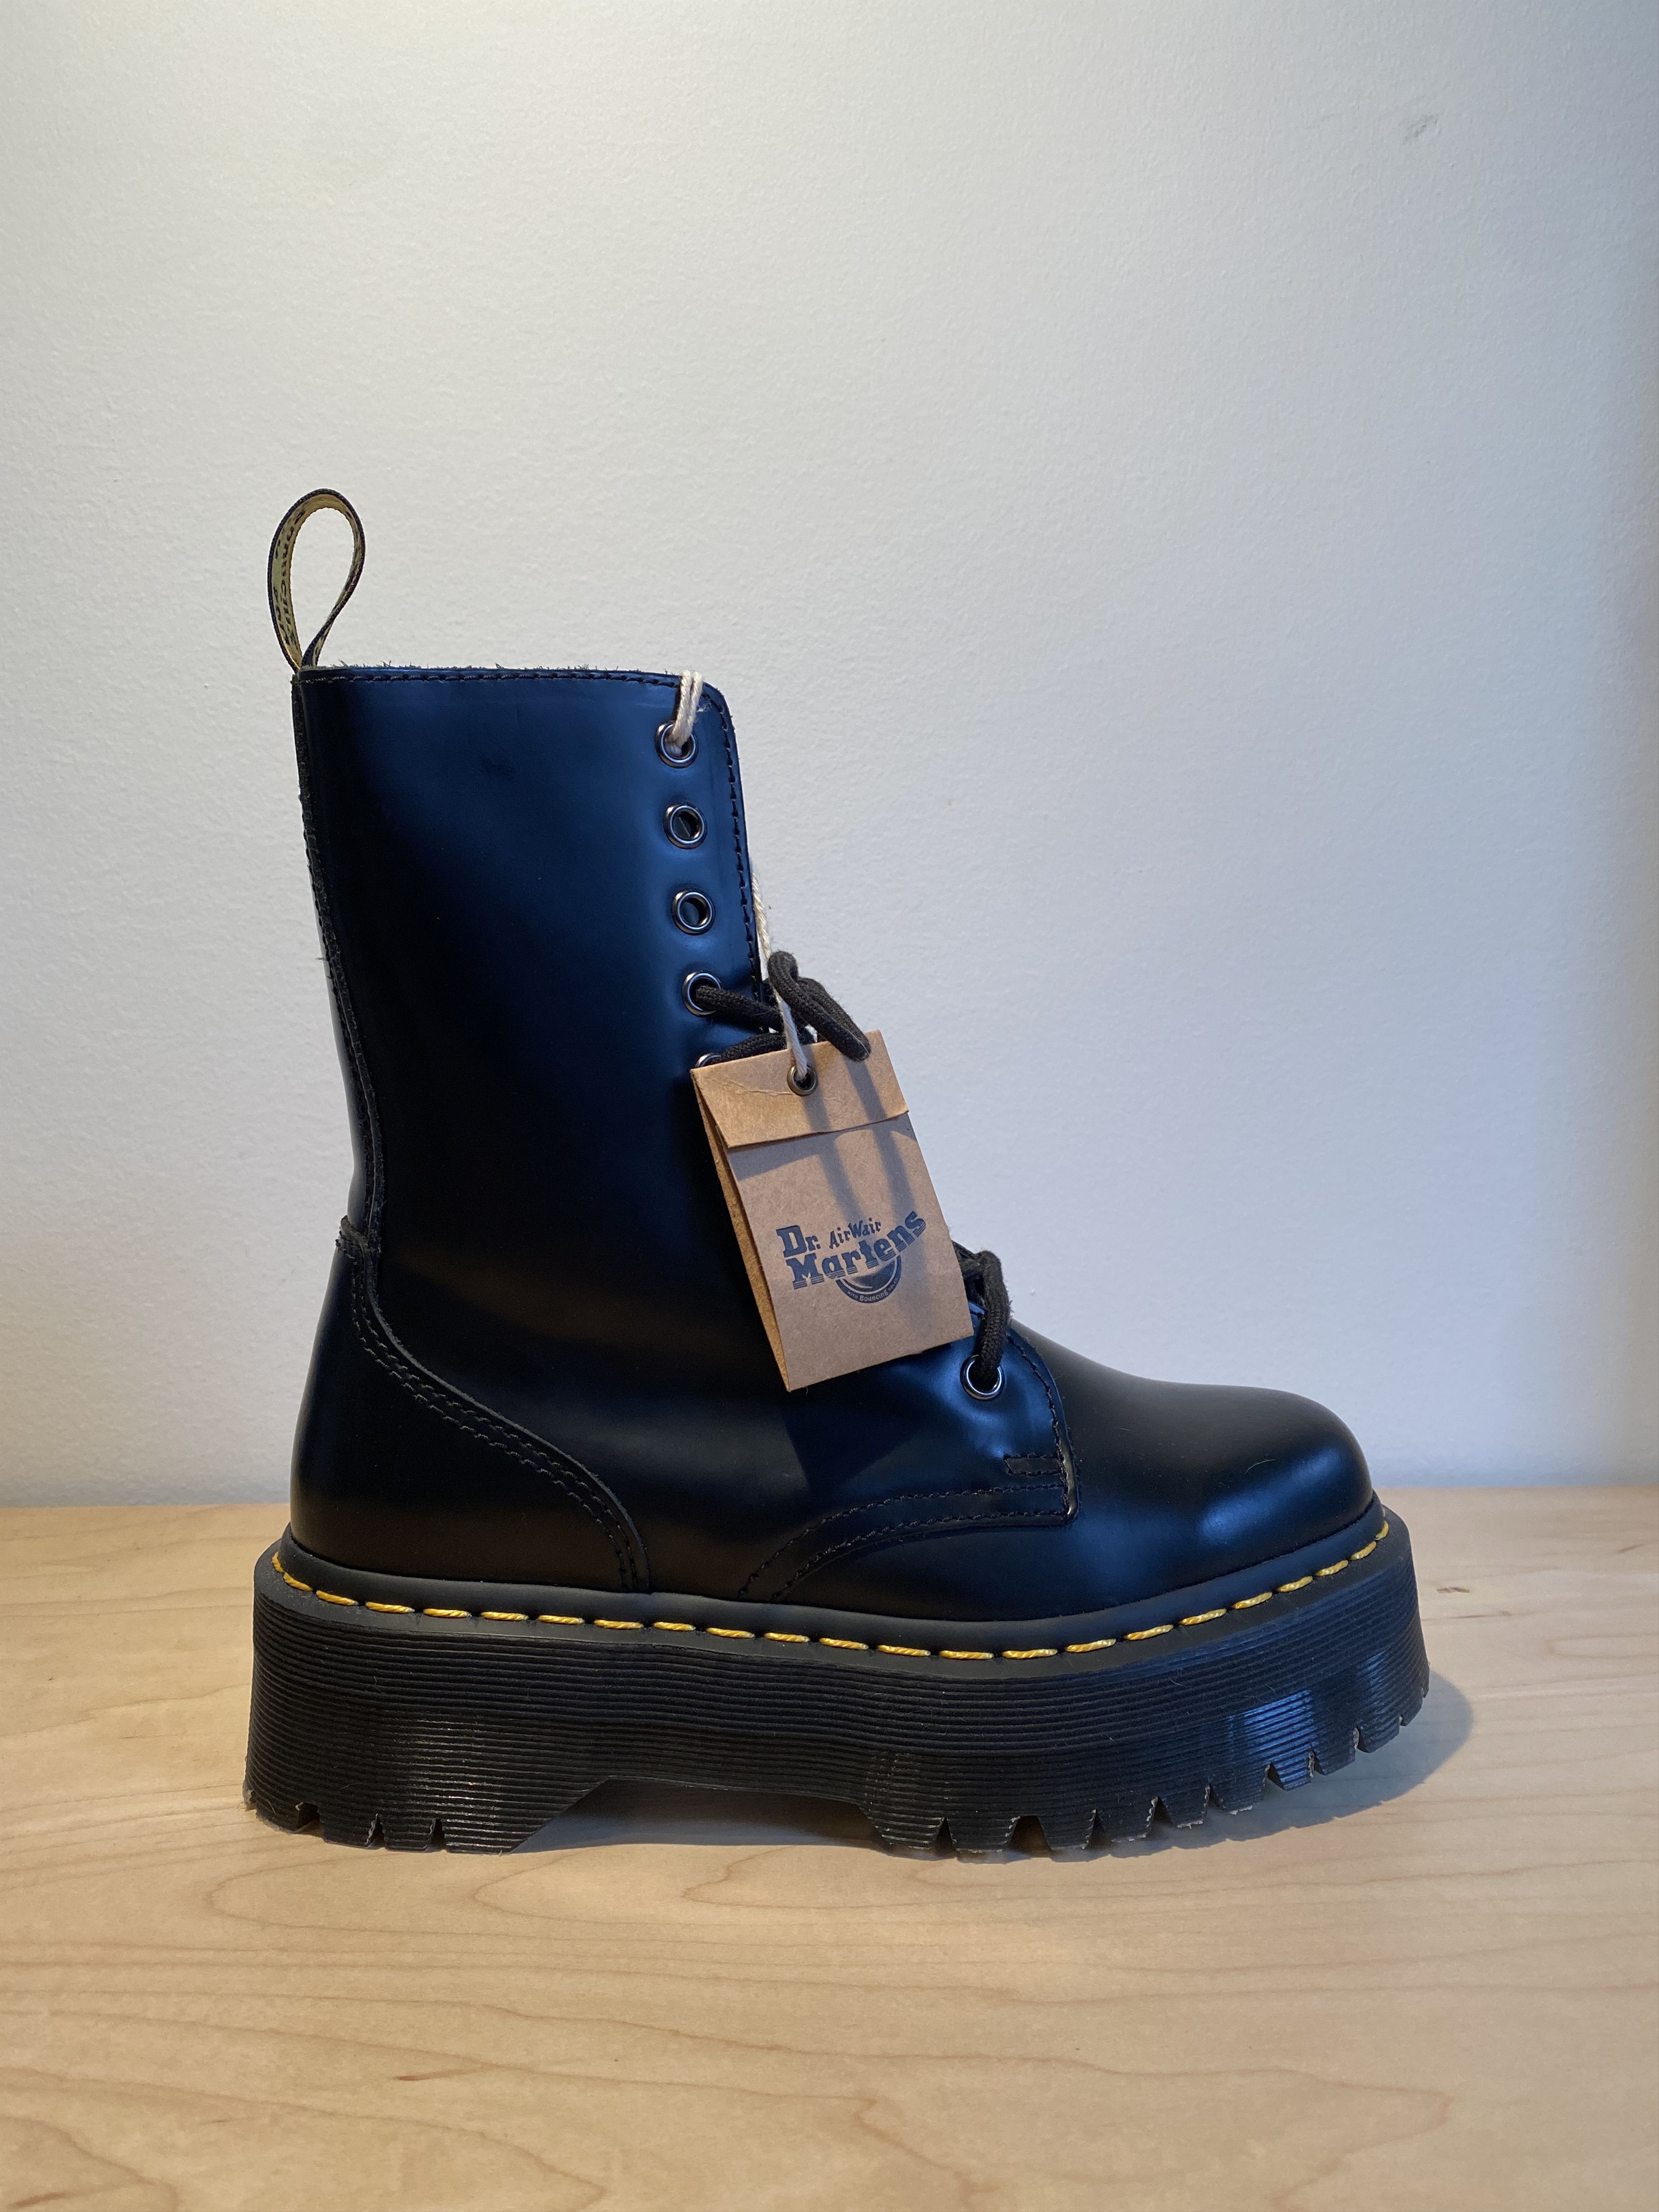 Dr. Martens Dr. Martens Jadon Hi Smooth Leather Platform Boots Size US 6 / EU 39 - 1 Preview